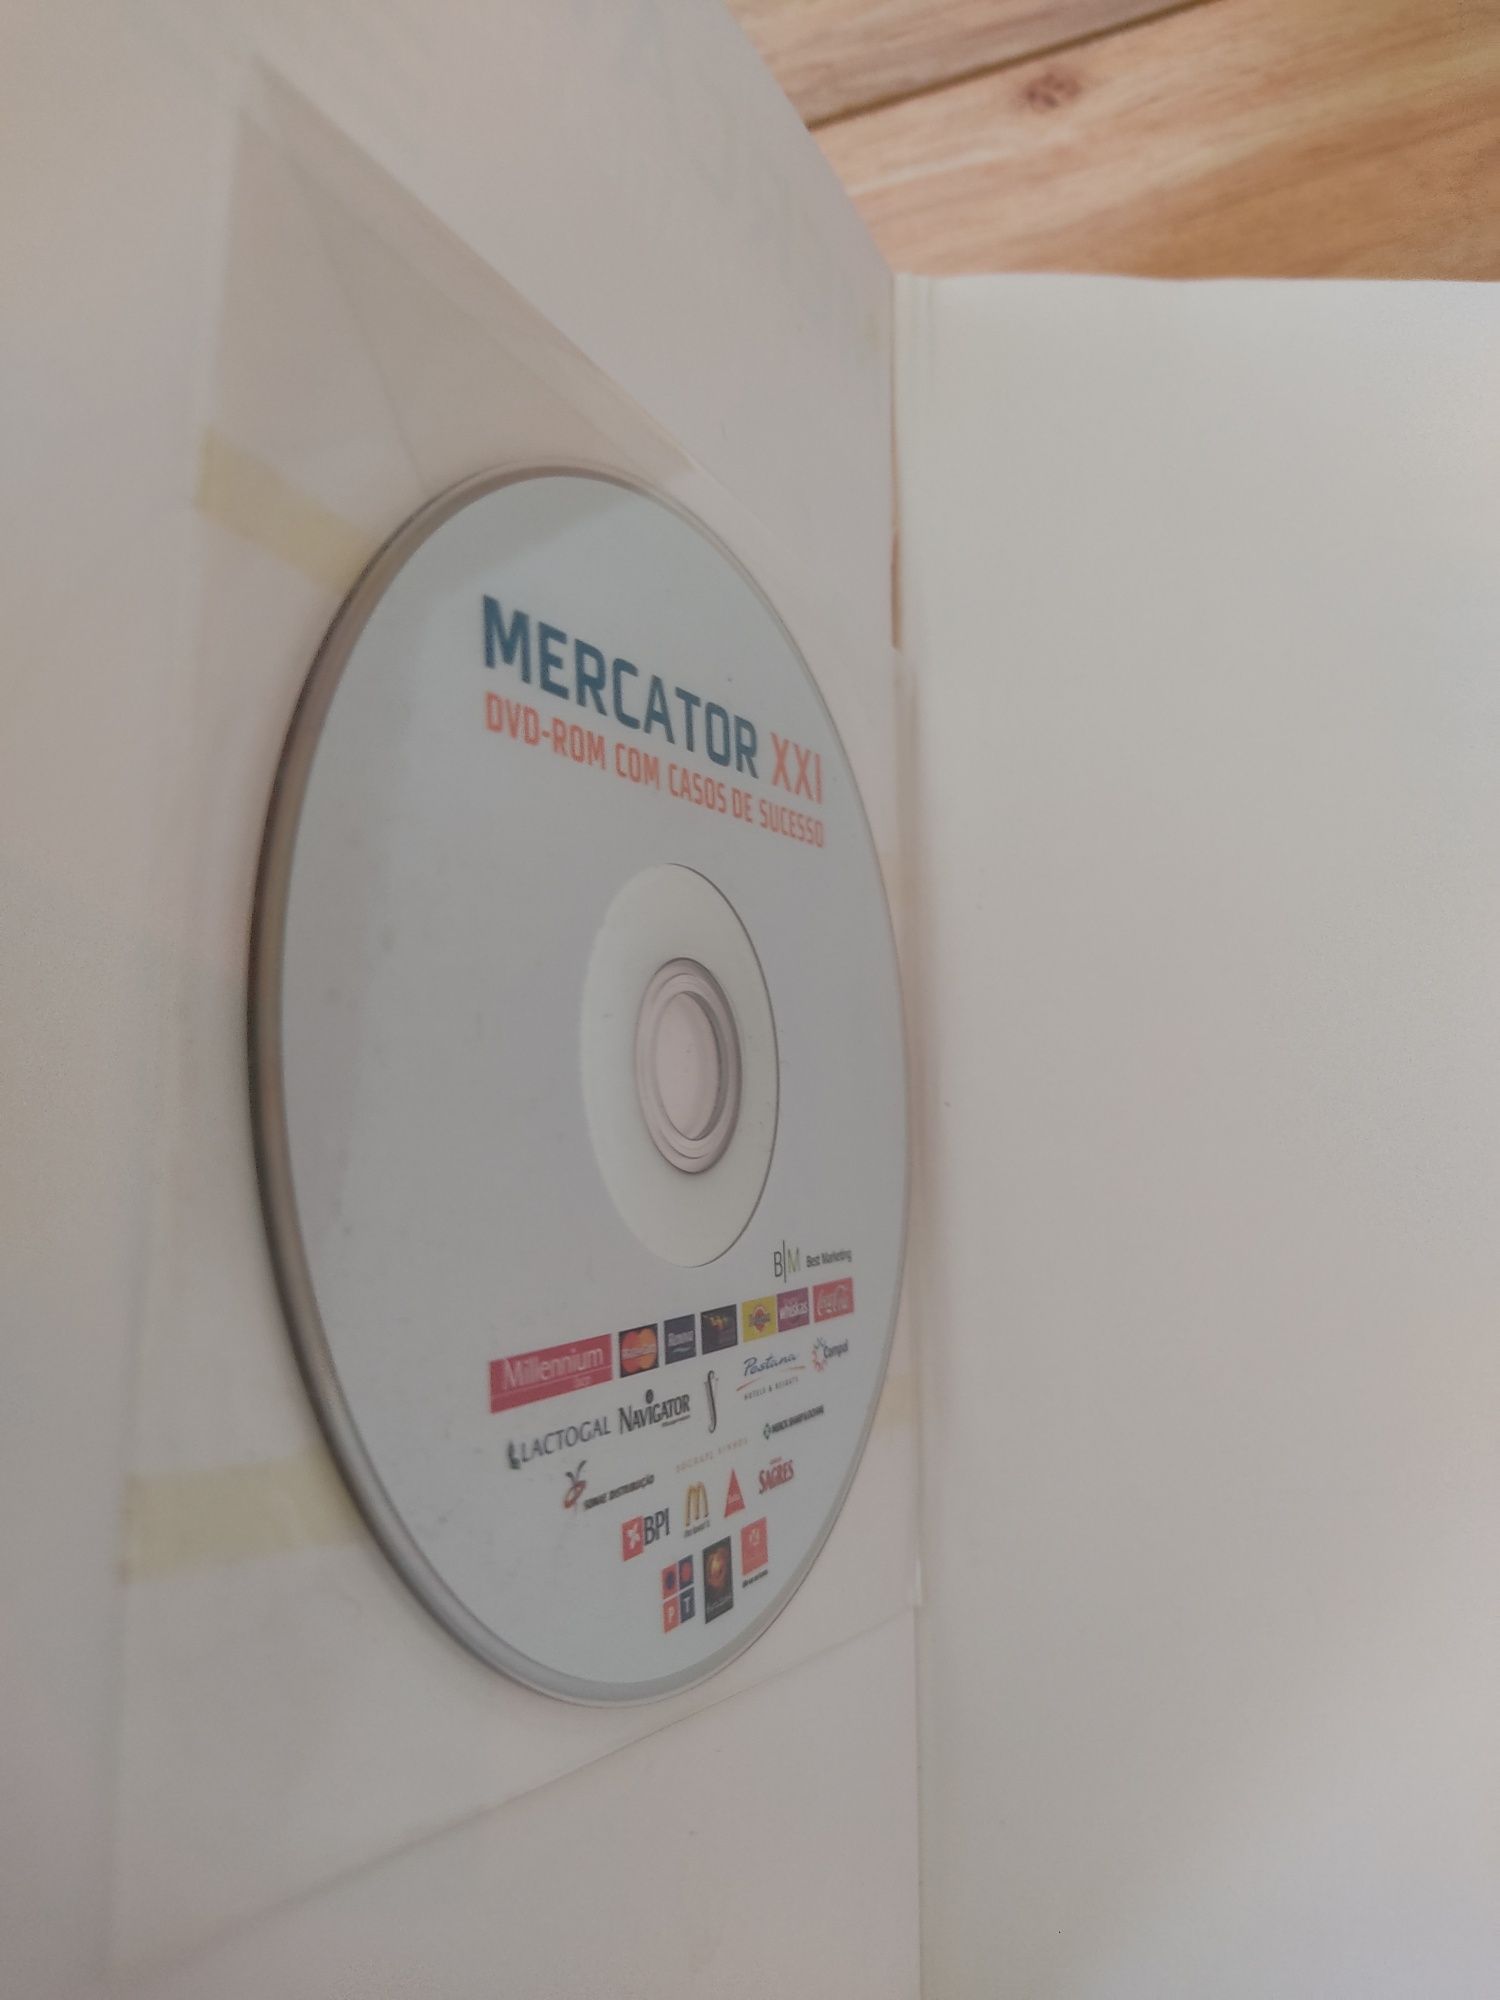 Livro "Mercator XXI teoria e prática do marketing"